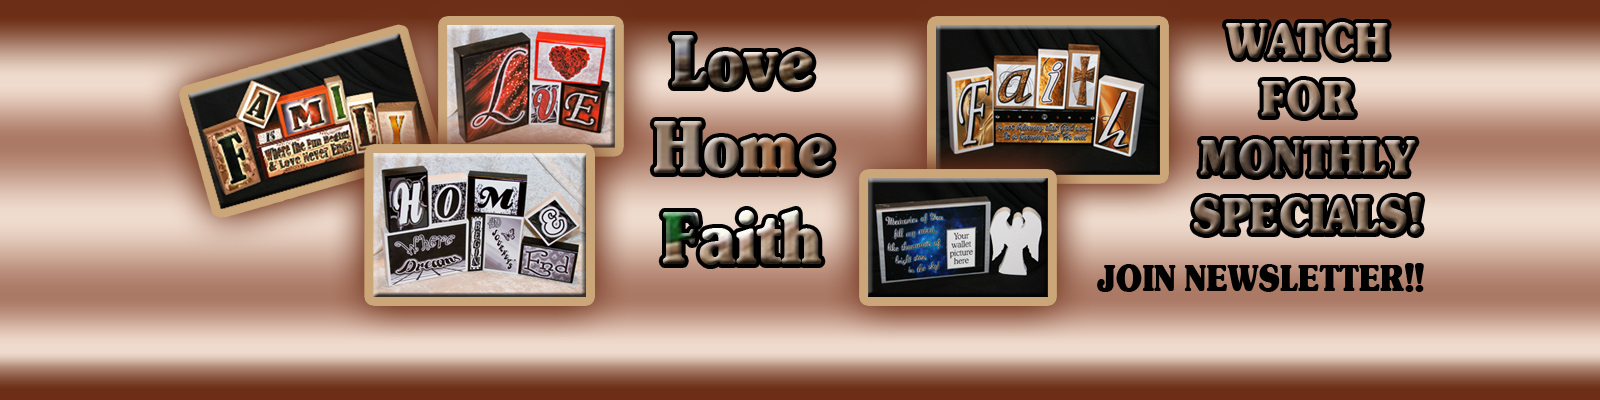 Love Home Faith